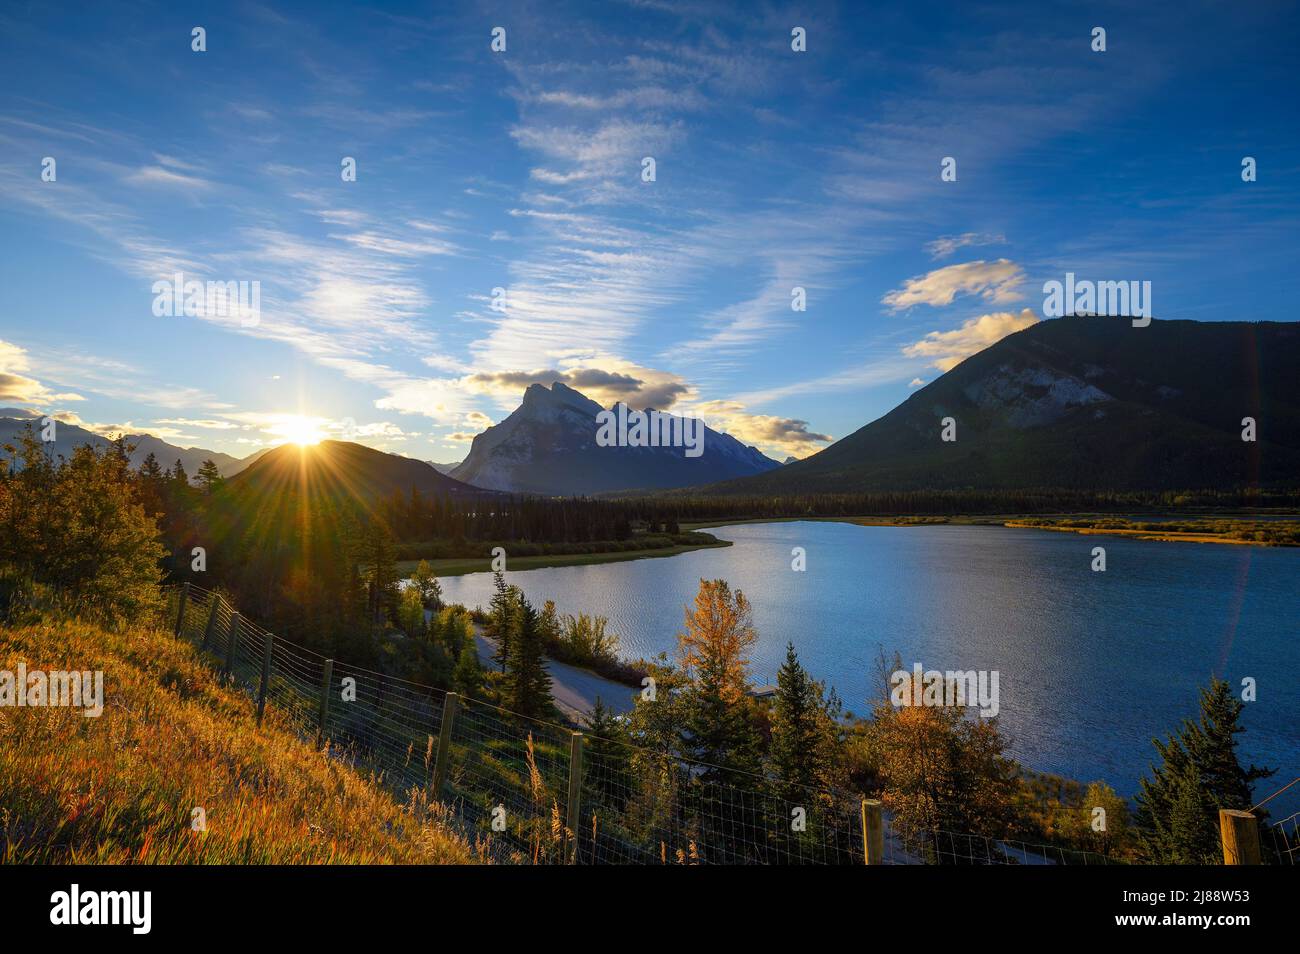 Lever de soleil au-dessus des lacs Vermilion dans le parc national Banff, Canada Banque D'Images